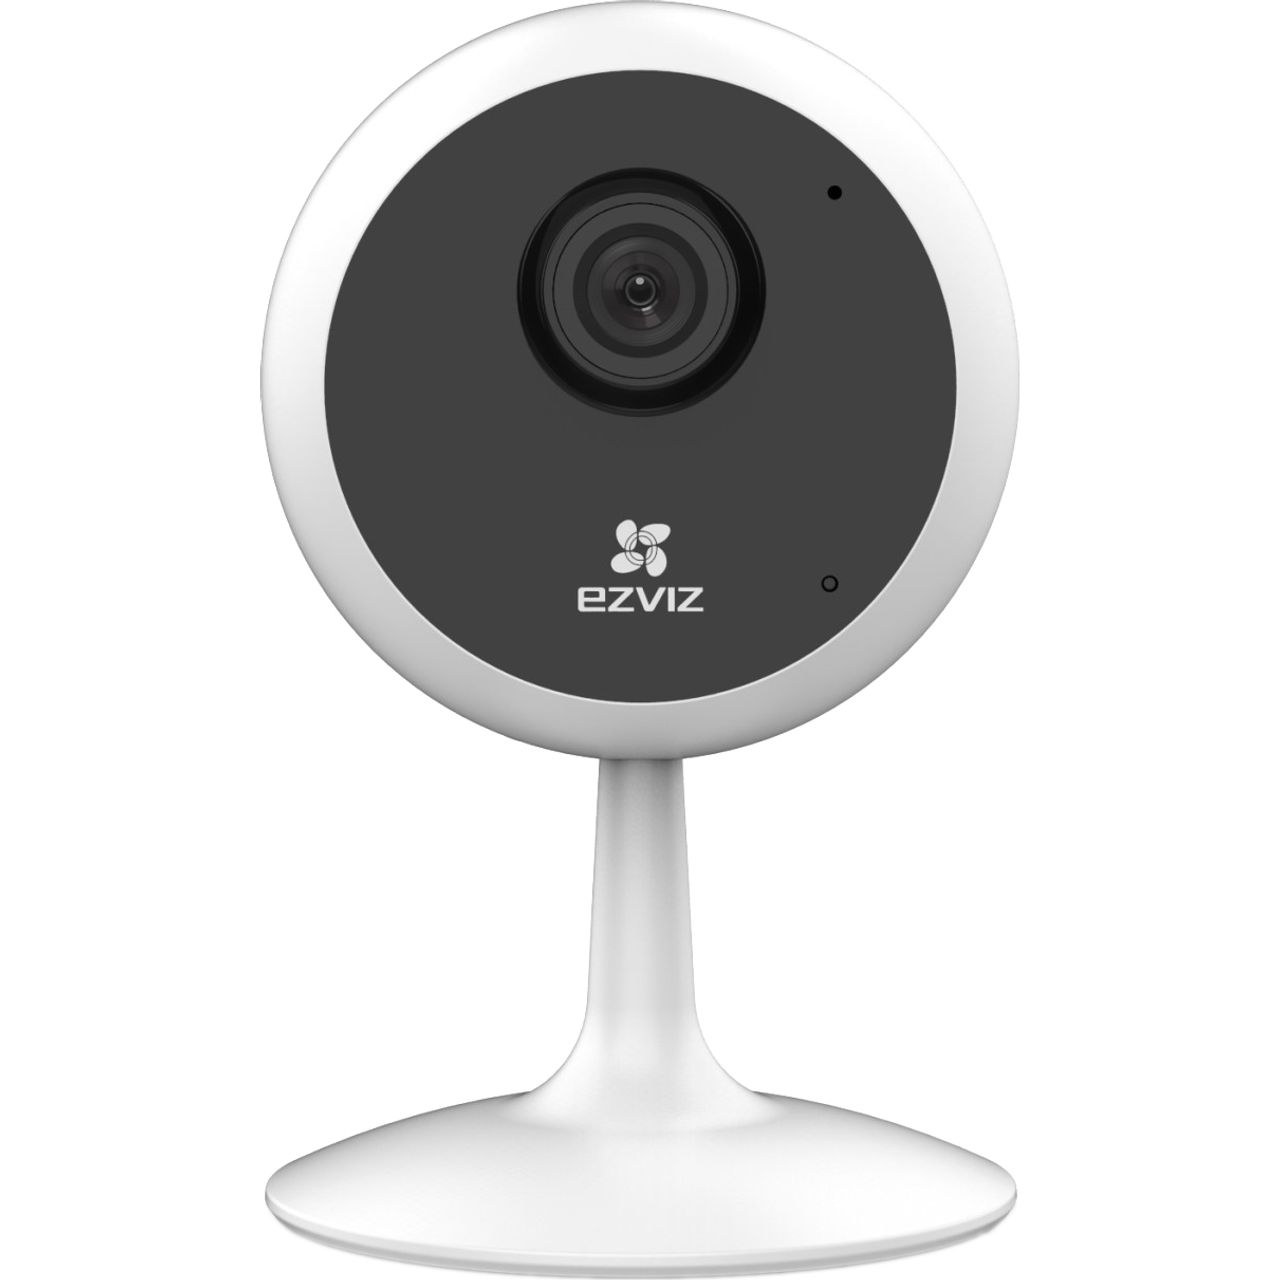 EZVIZ C1C WIFI Indoor Smart Home Security Camera Full HD 1080p Review